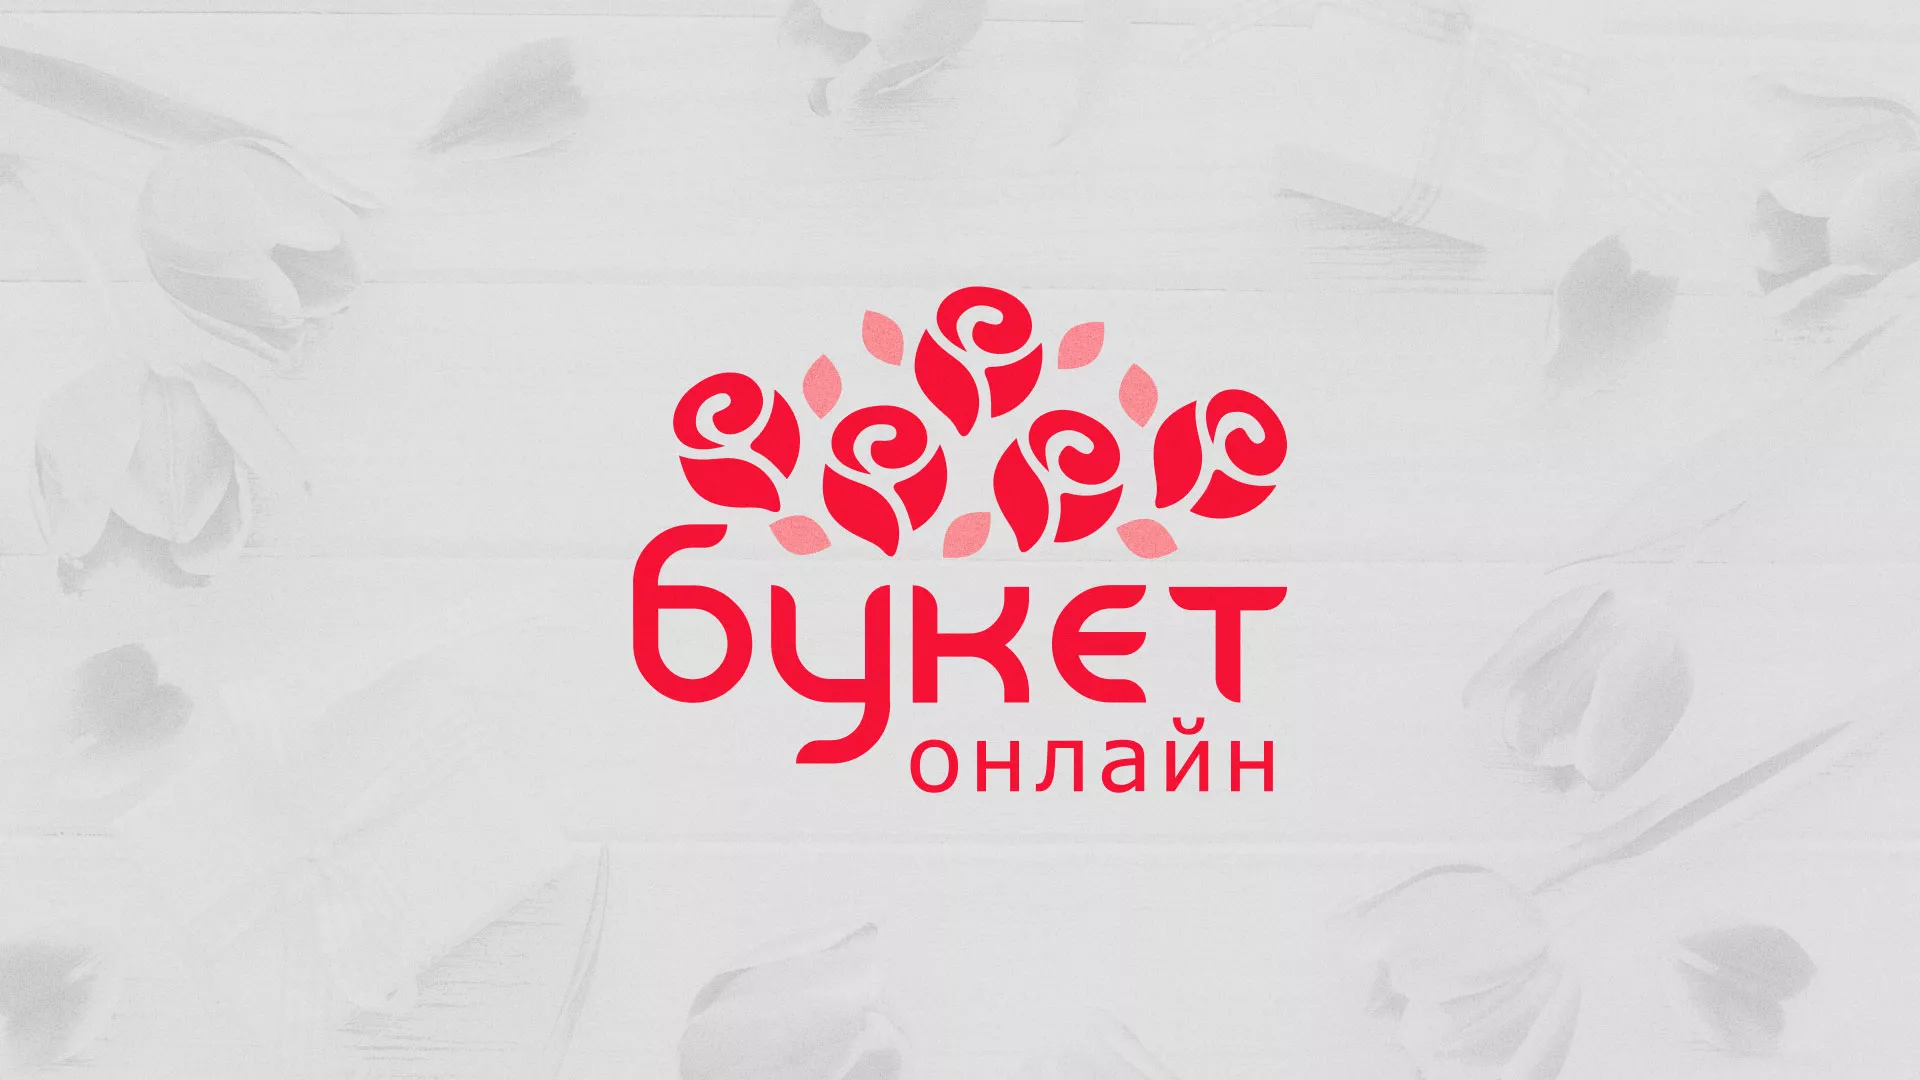 Создание интернет-магазина «Букет-онлайн» по цветам в Можайске